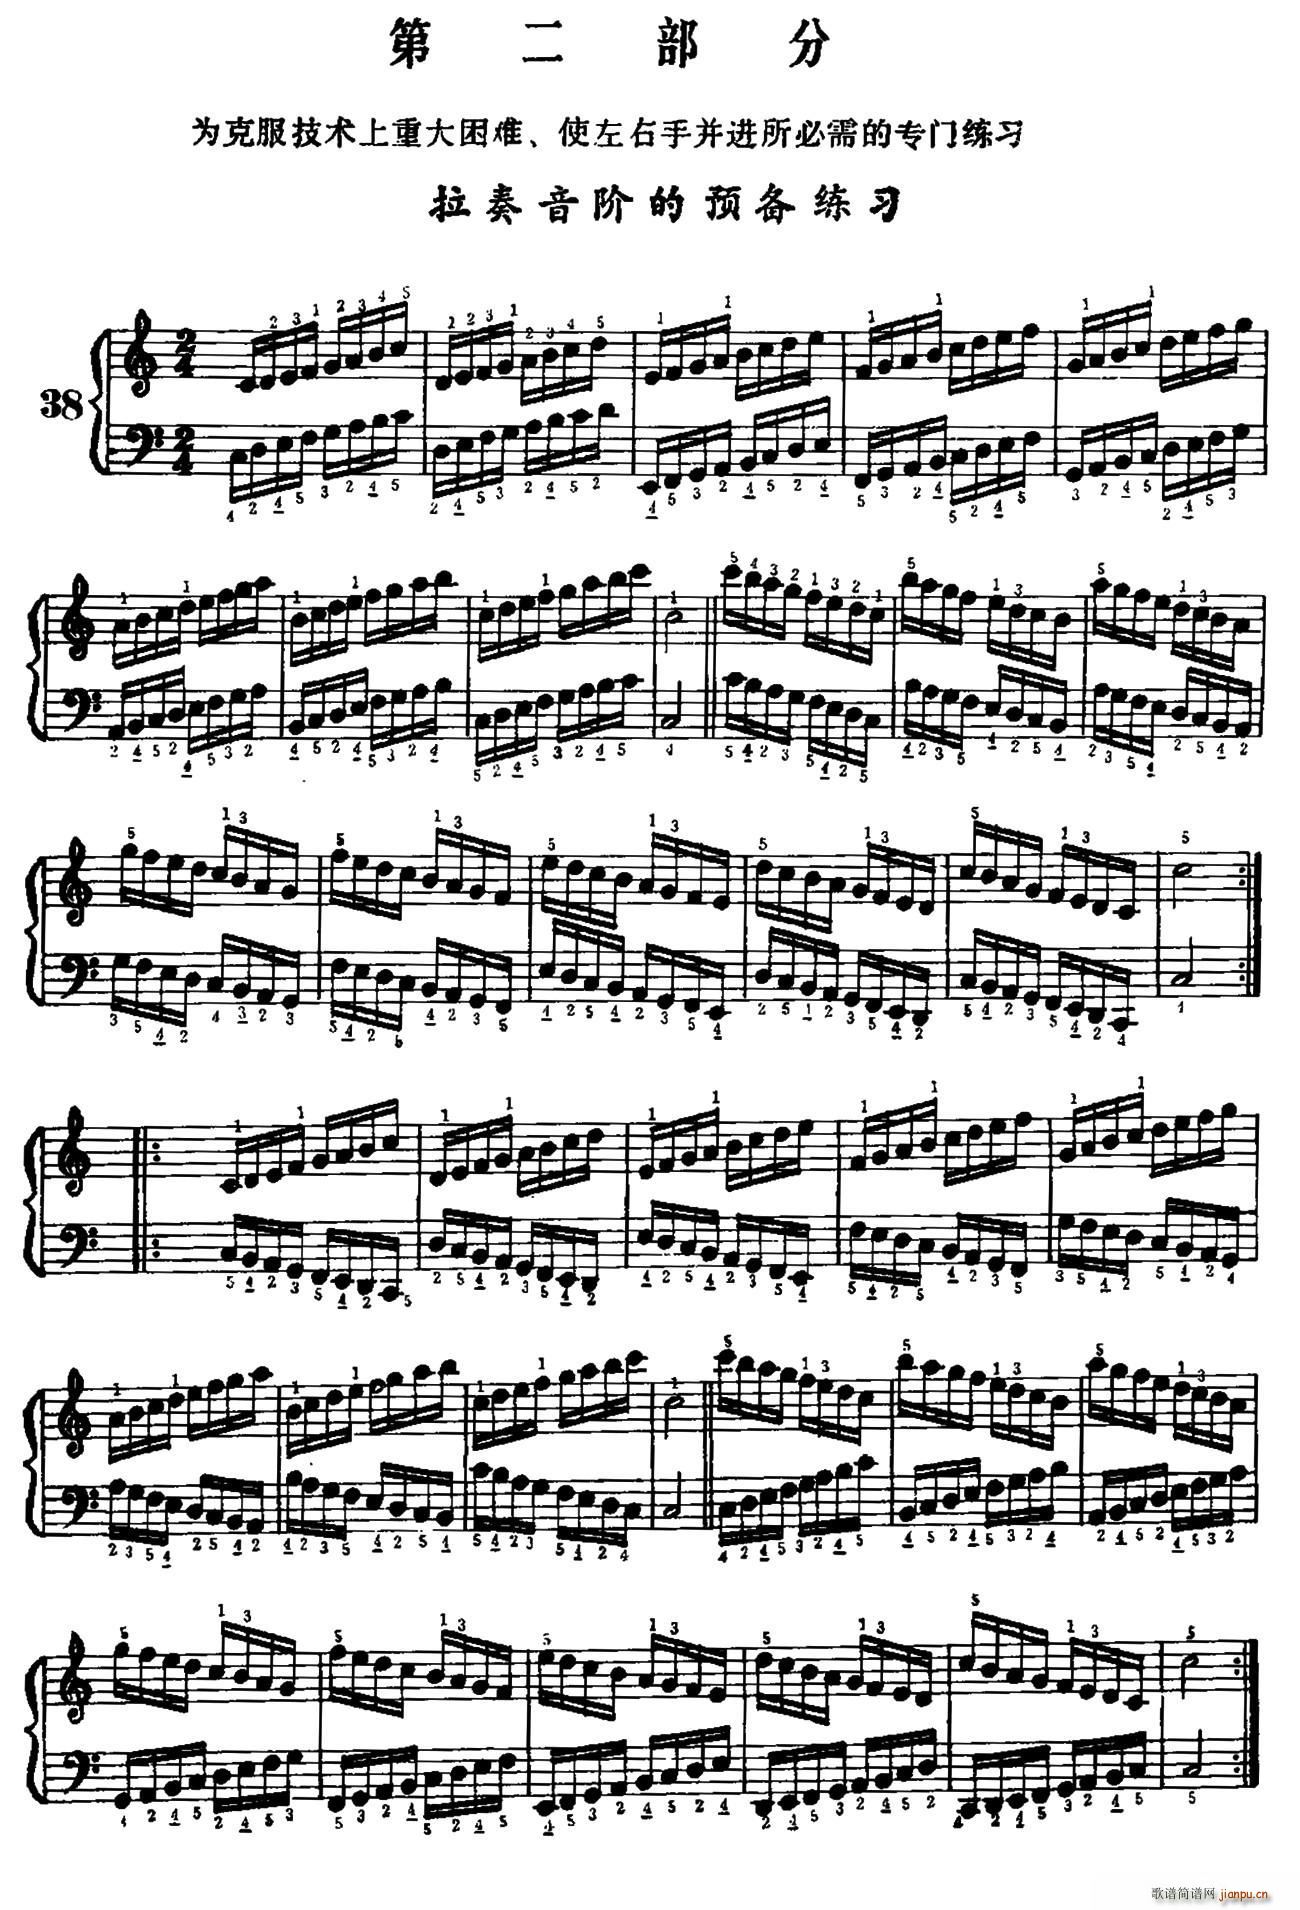 手风琴手指练习 第二部分 拉奏音阶的预备练习(手风琴谱)1